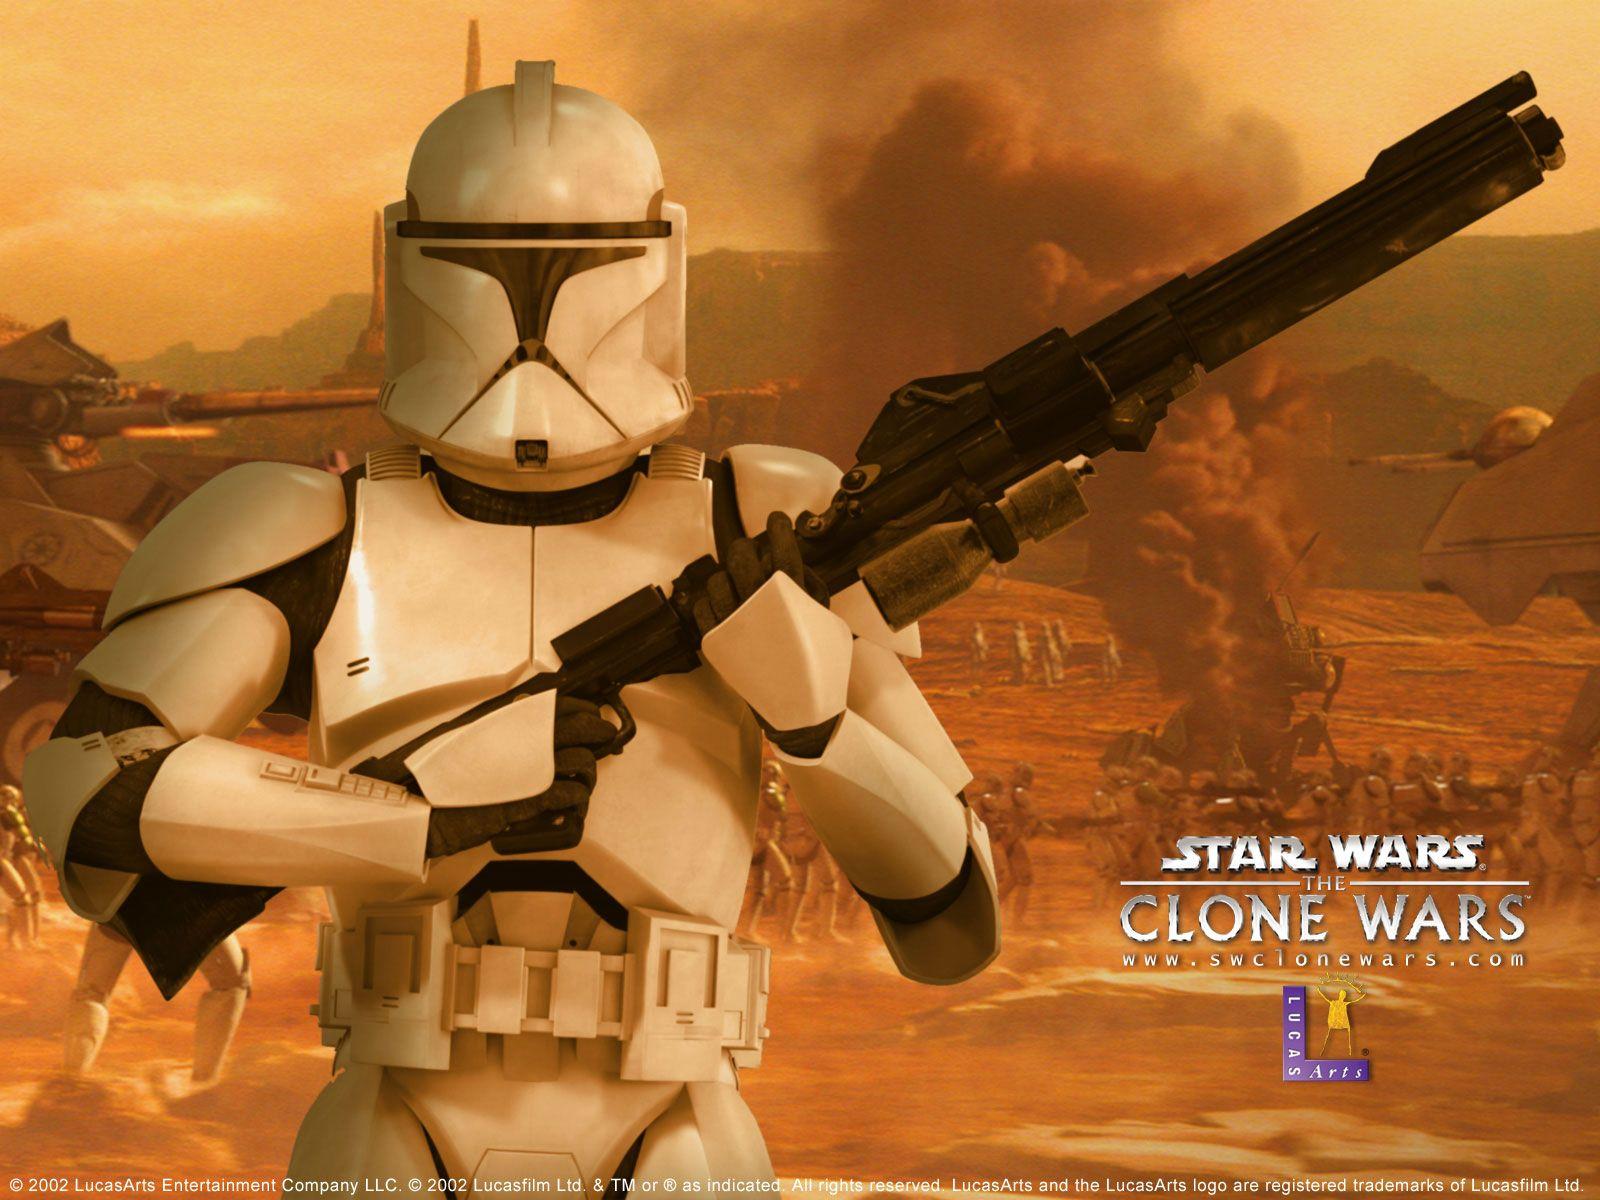 Star Wars: The Clone Wars HD Wallpaper